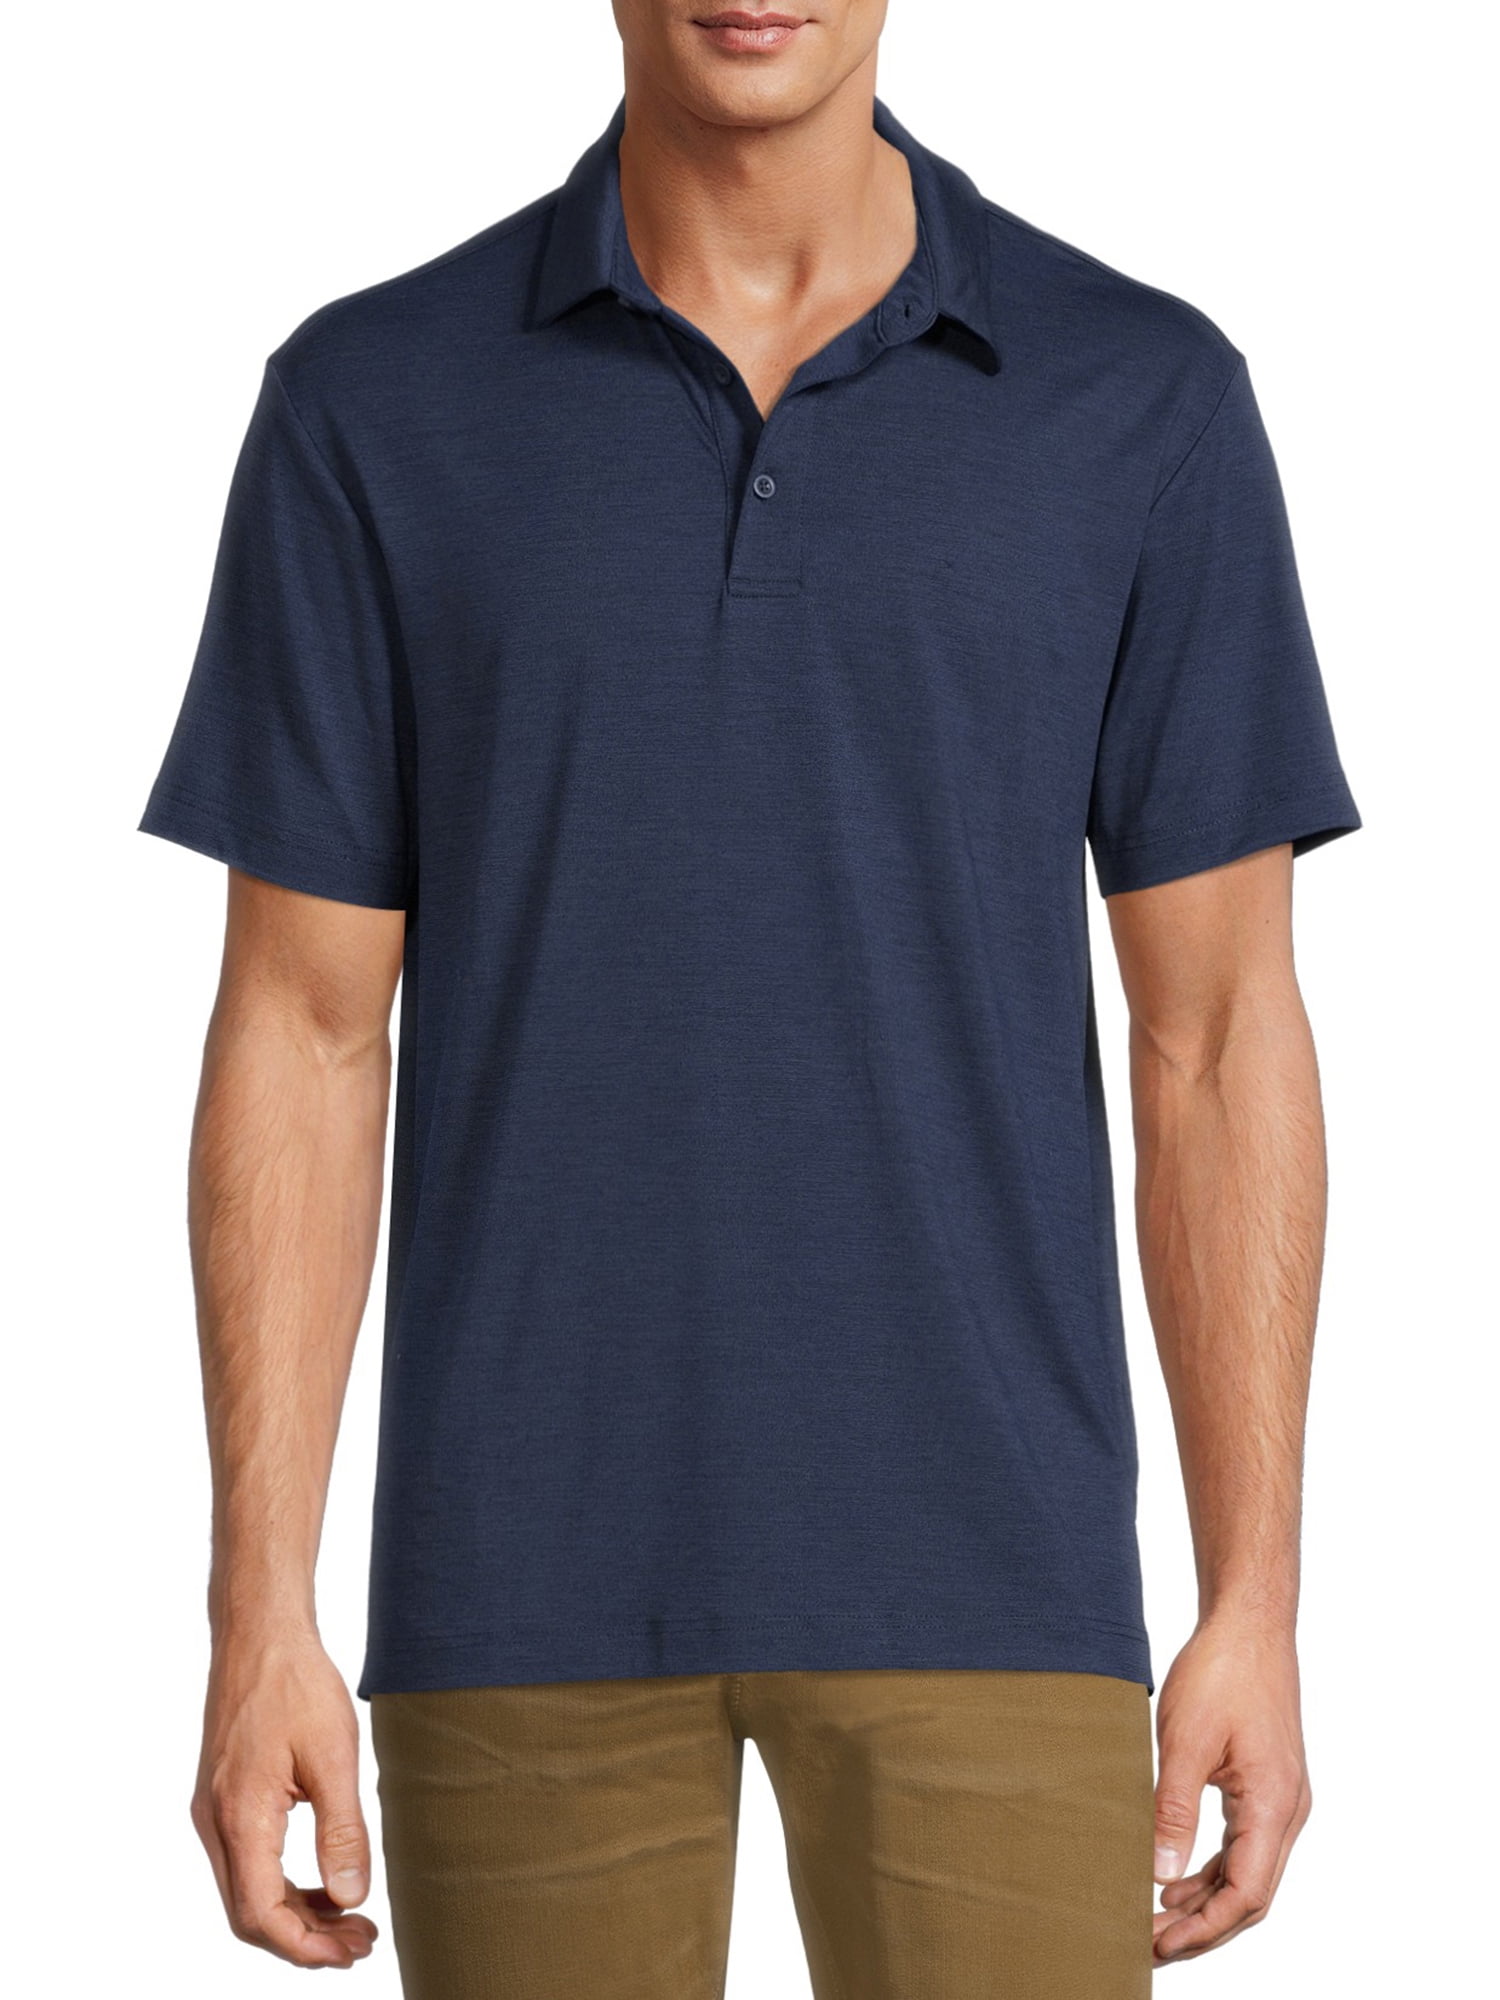 George Men's and Big Men's Polo Shirt - Walmart.com